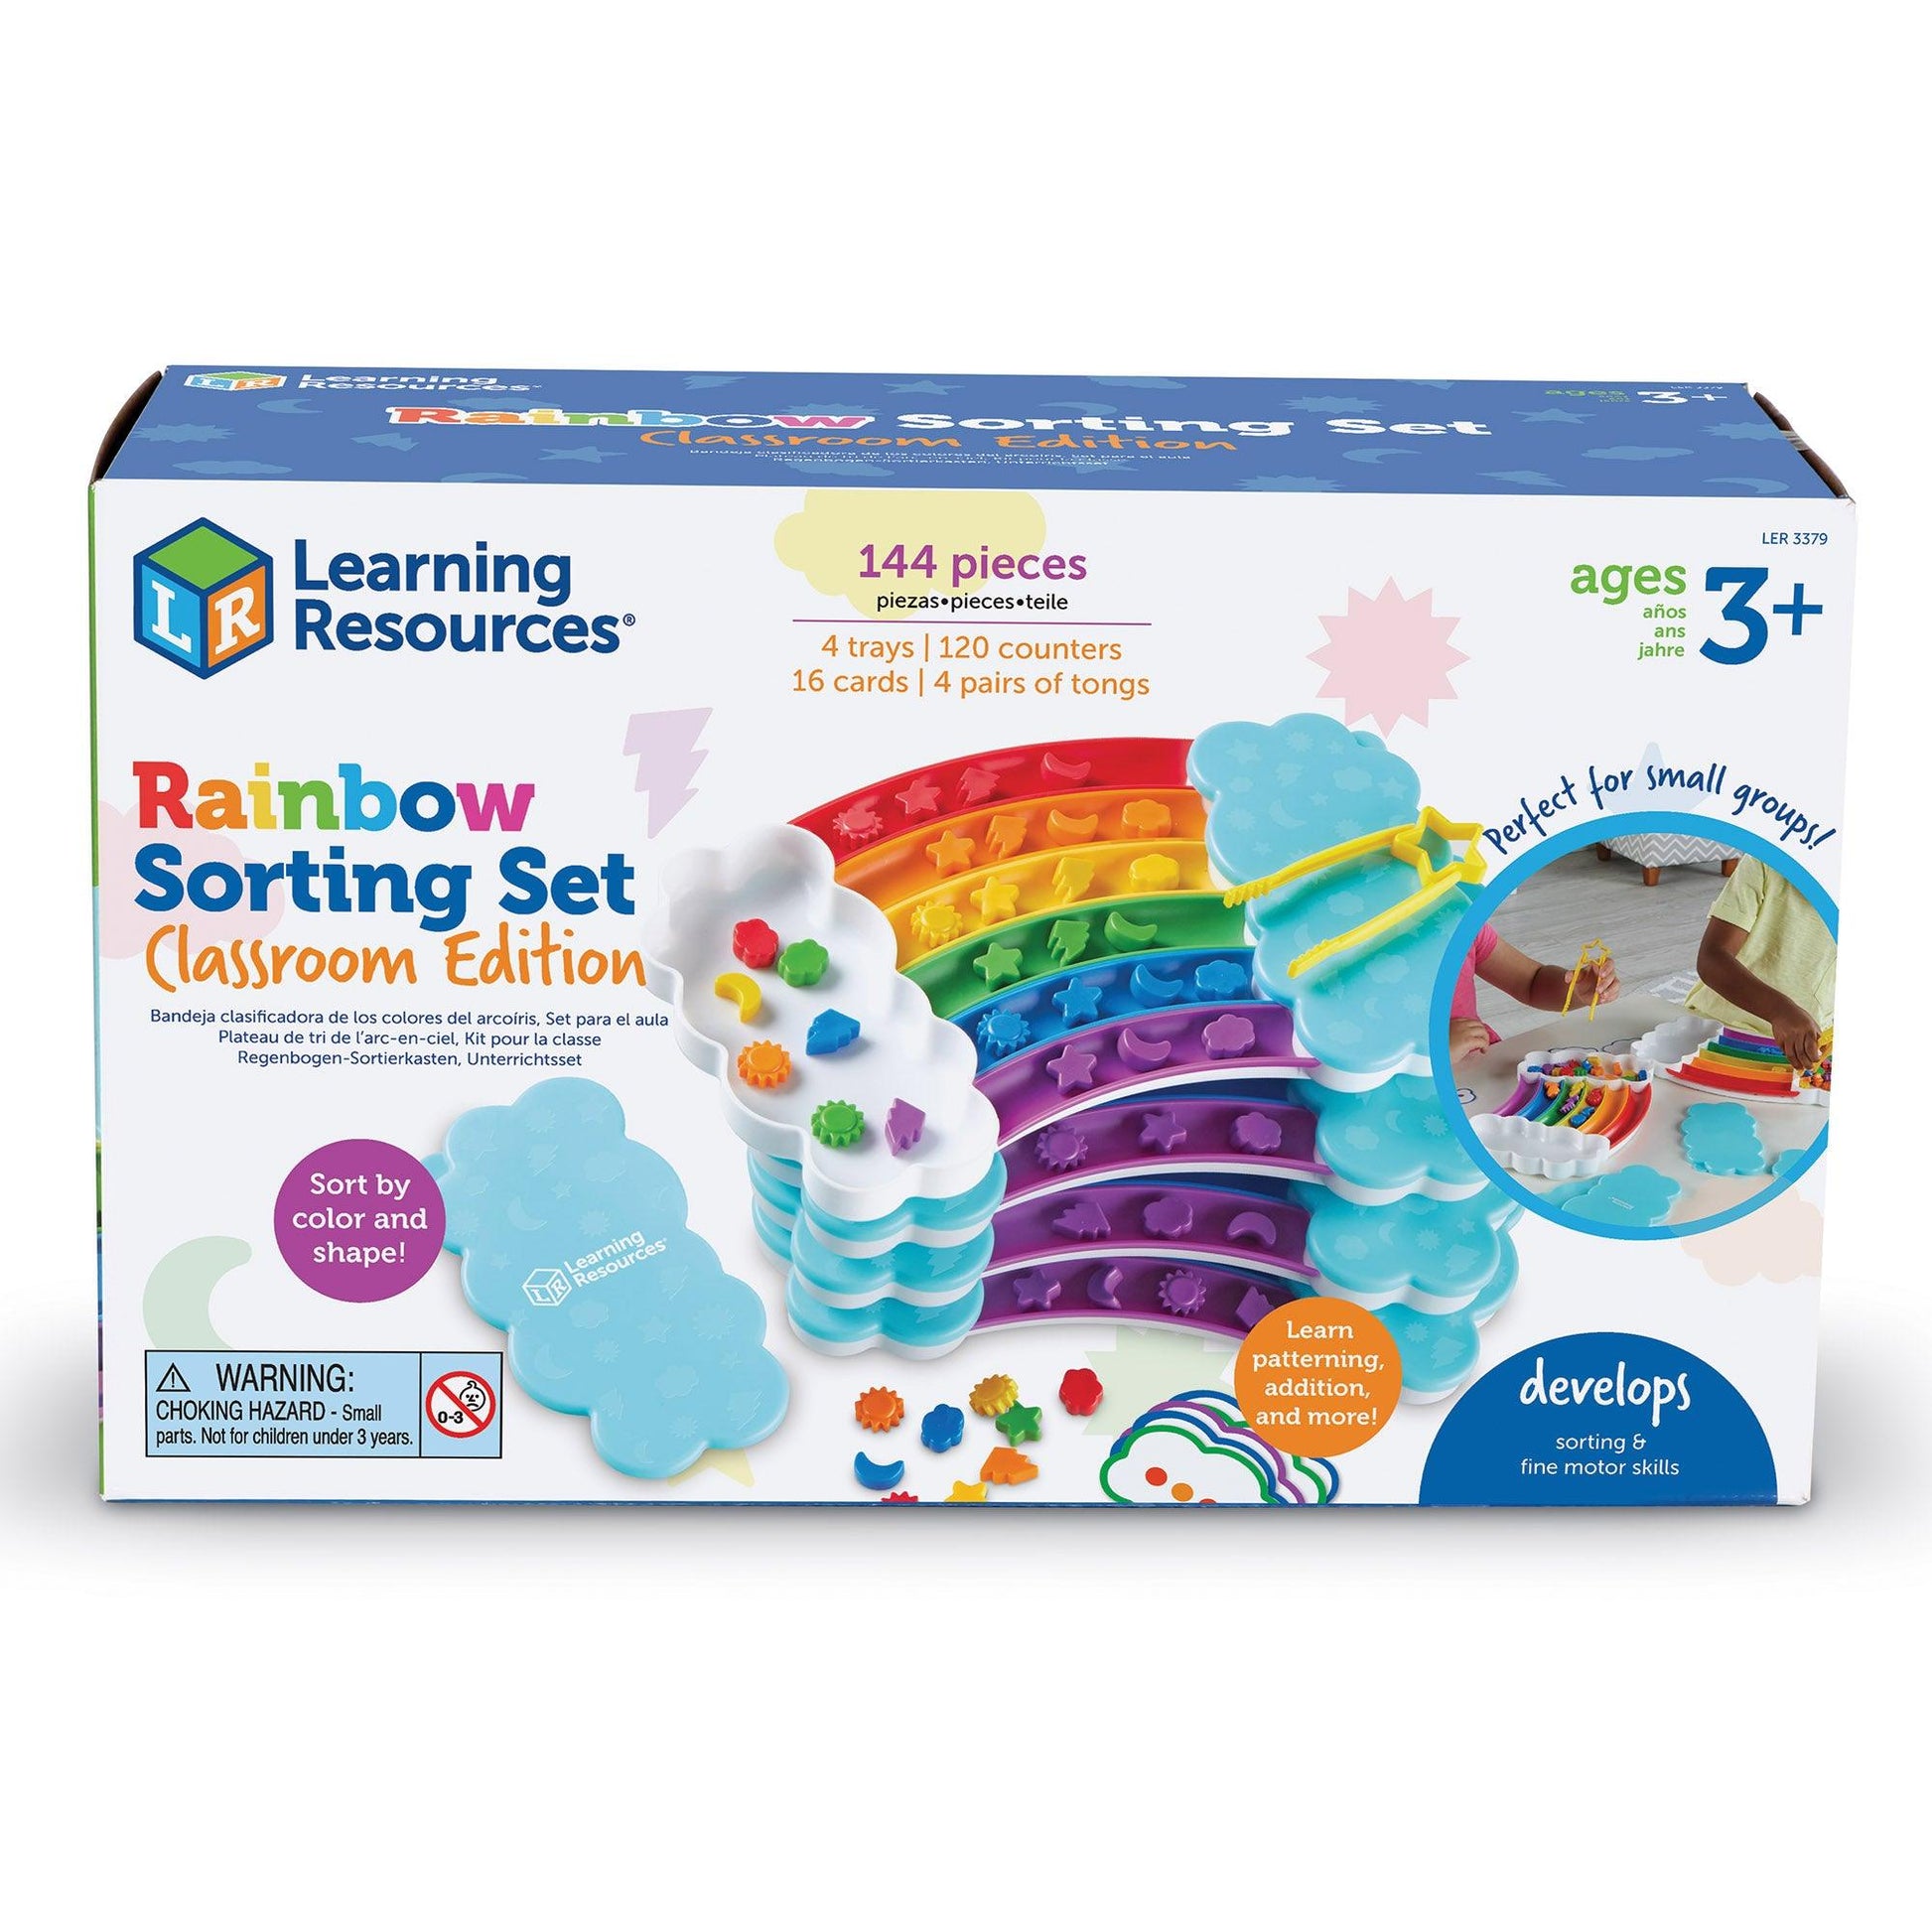 Rainbow Sorting Trays Classroom Edition - Loomini